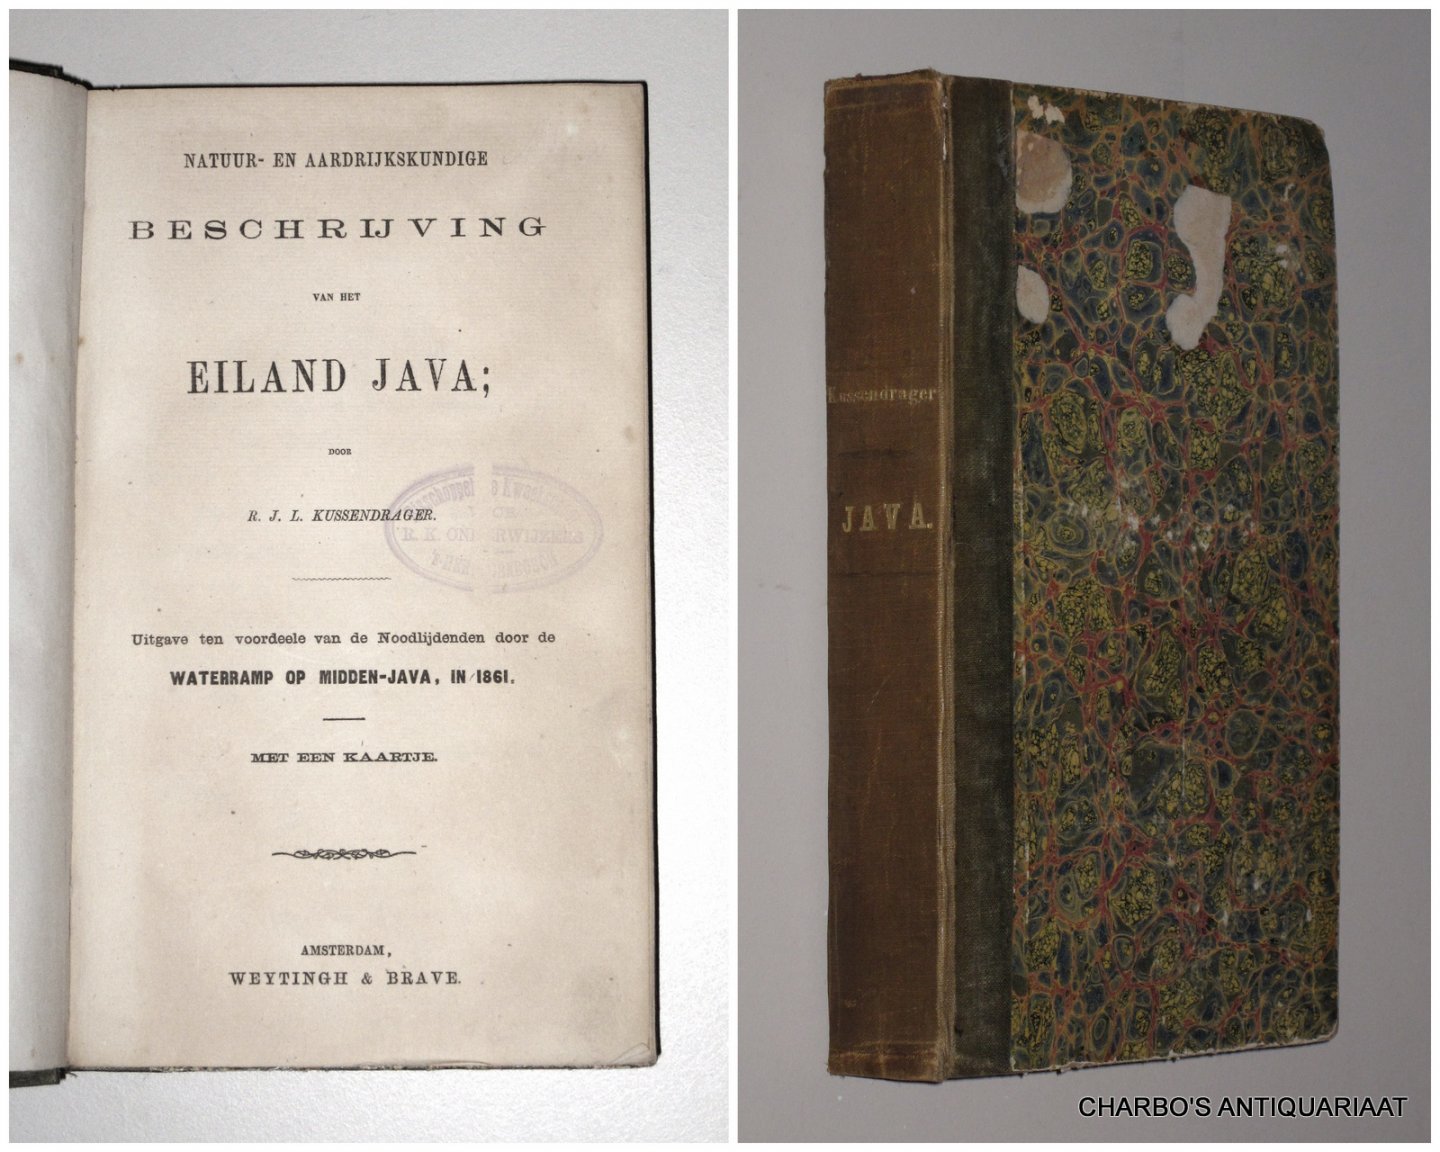 KUSSENDRAGER, R.J.L., - Natuur- en aardrijkskundige beschrijving van het eiland Java. Uitgave ten voordeele van de noodlijdenden door de waterramp op Midden-Java in 1861.